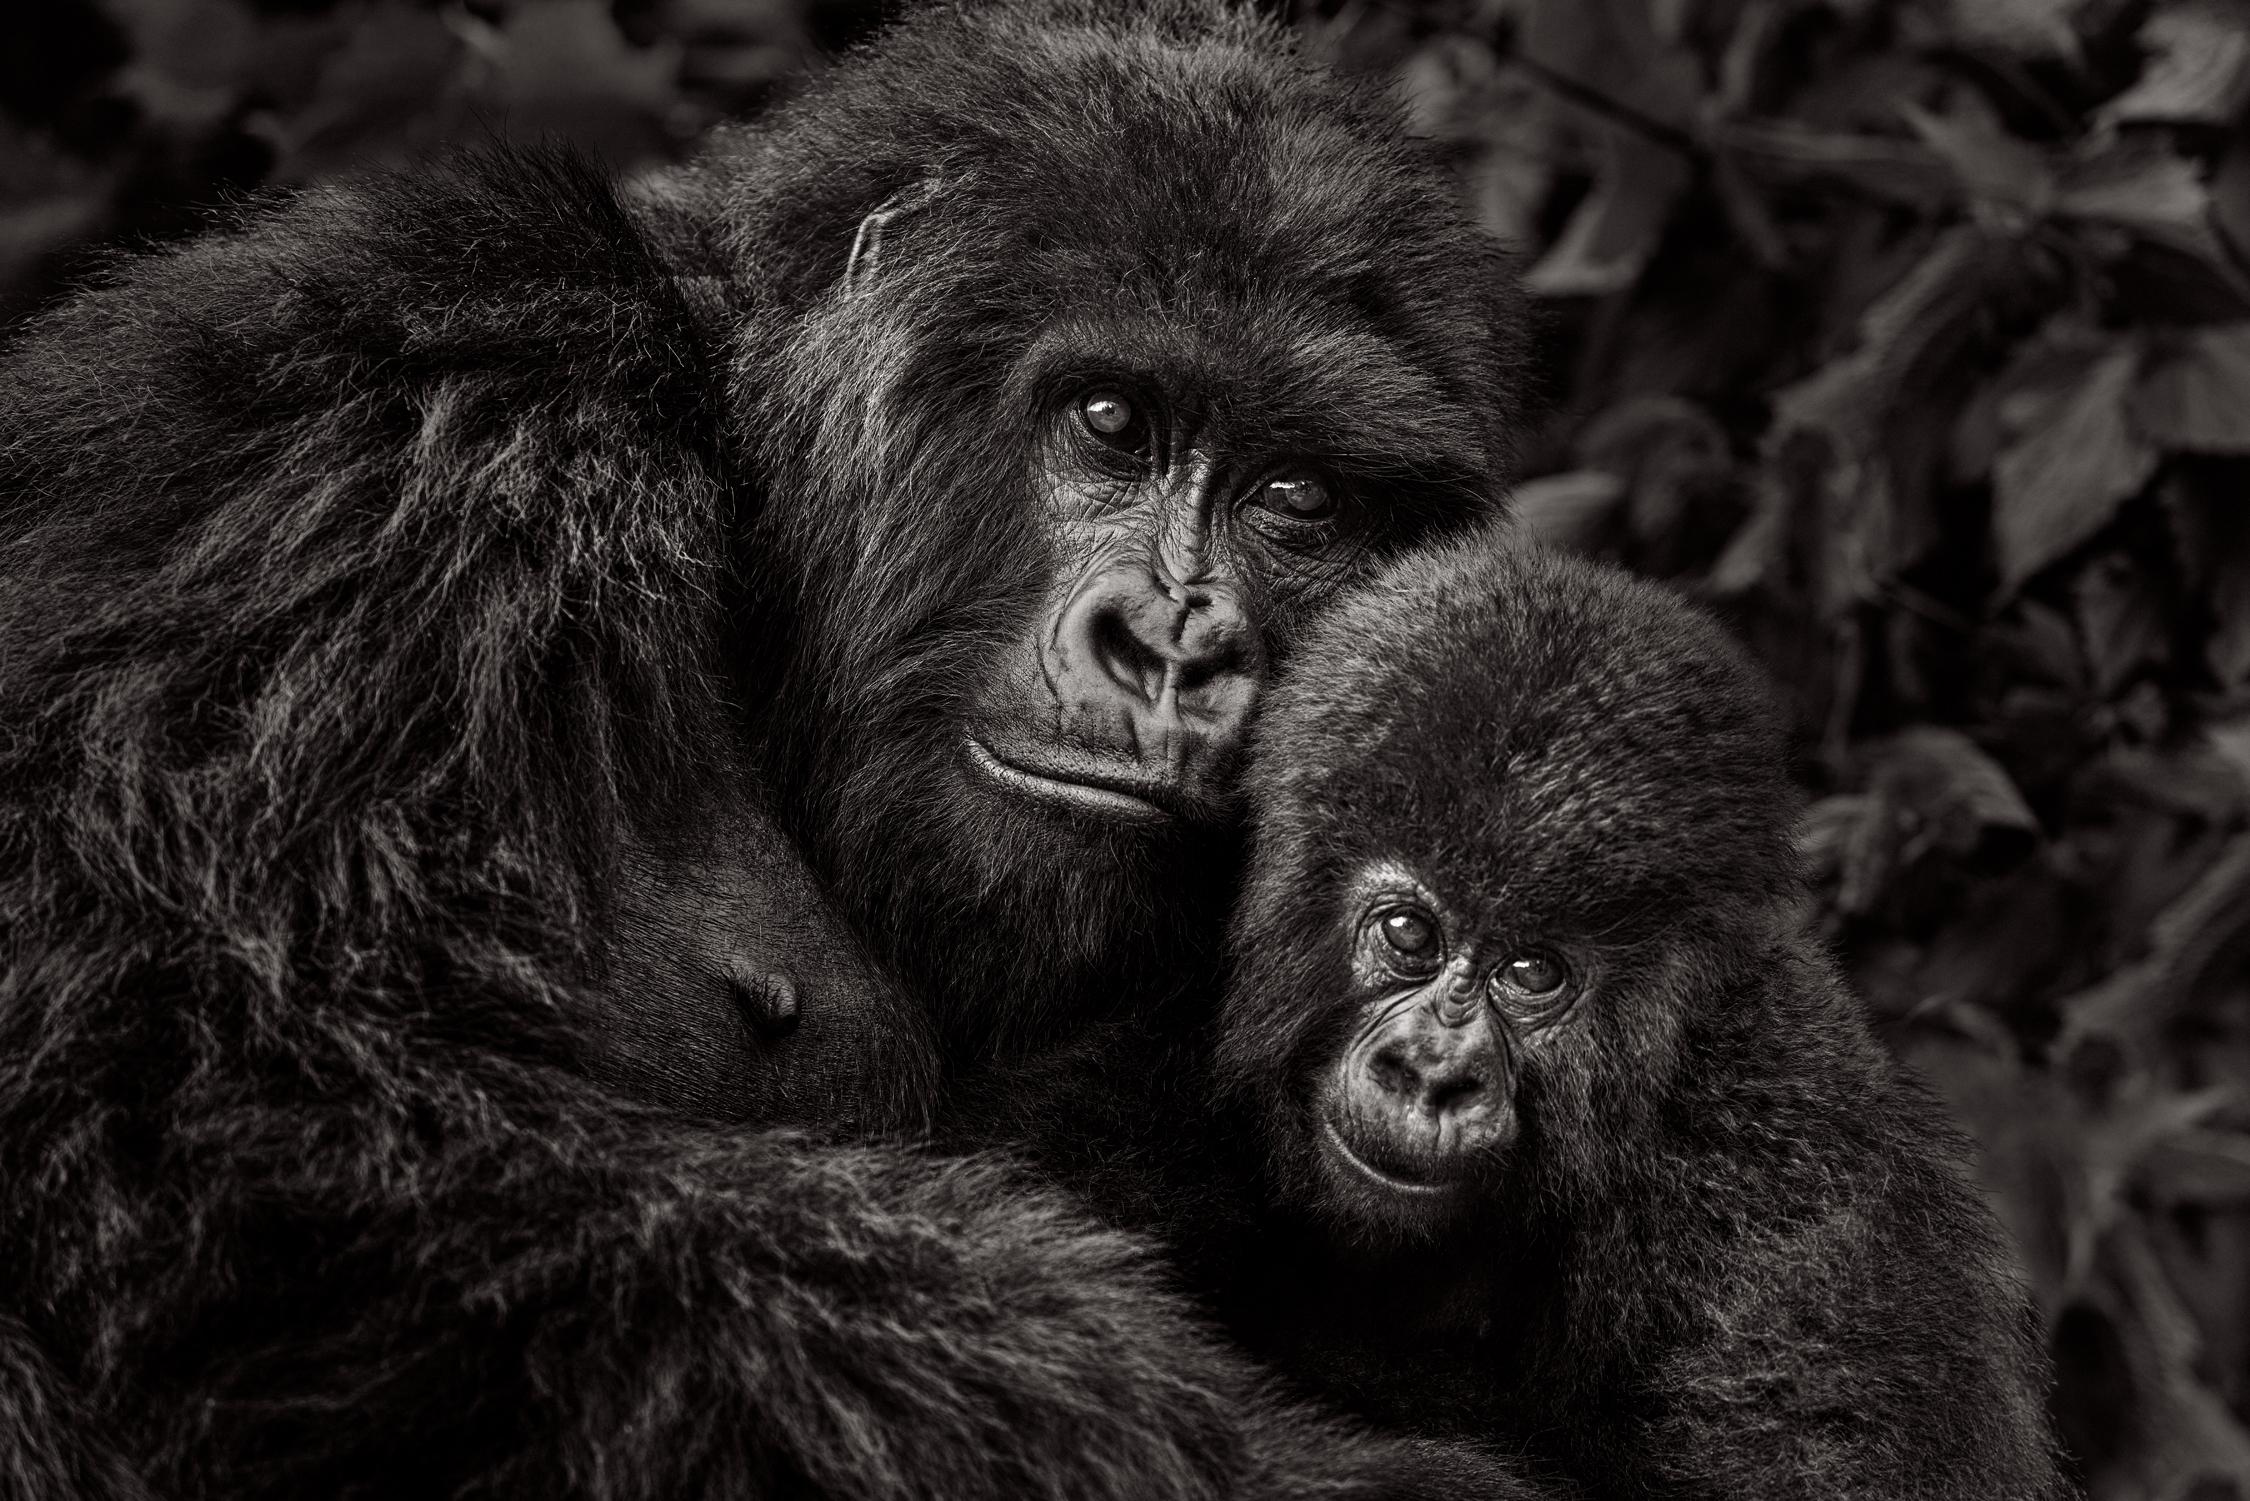 Drew Doggett Black and White Photograph – Eine Gorilla-Muttermutter mit ihrem Kind, die Kamera betrachtet